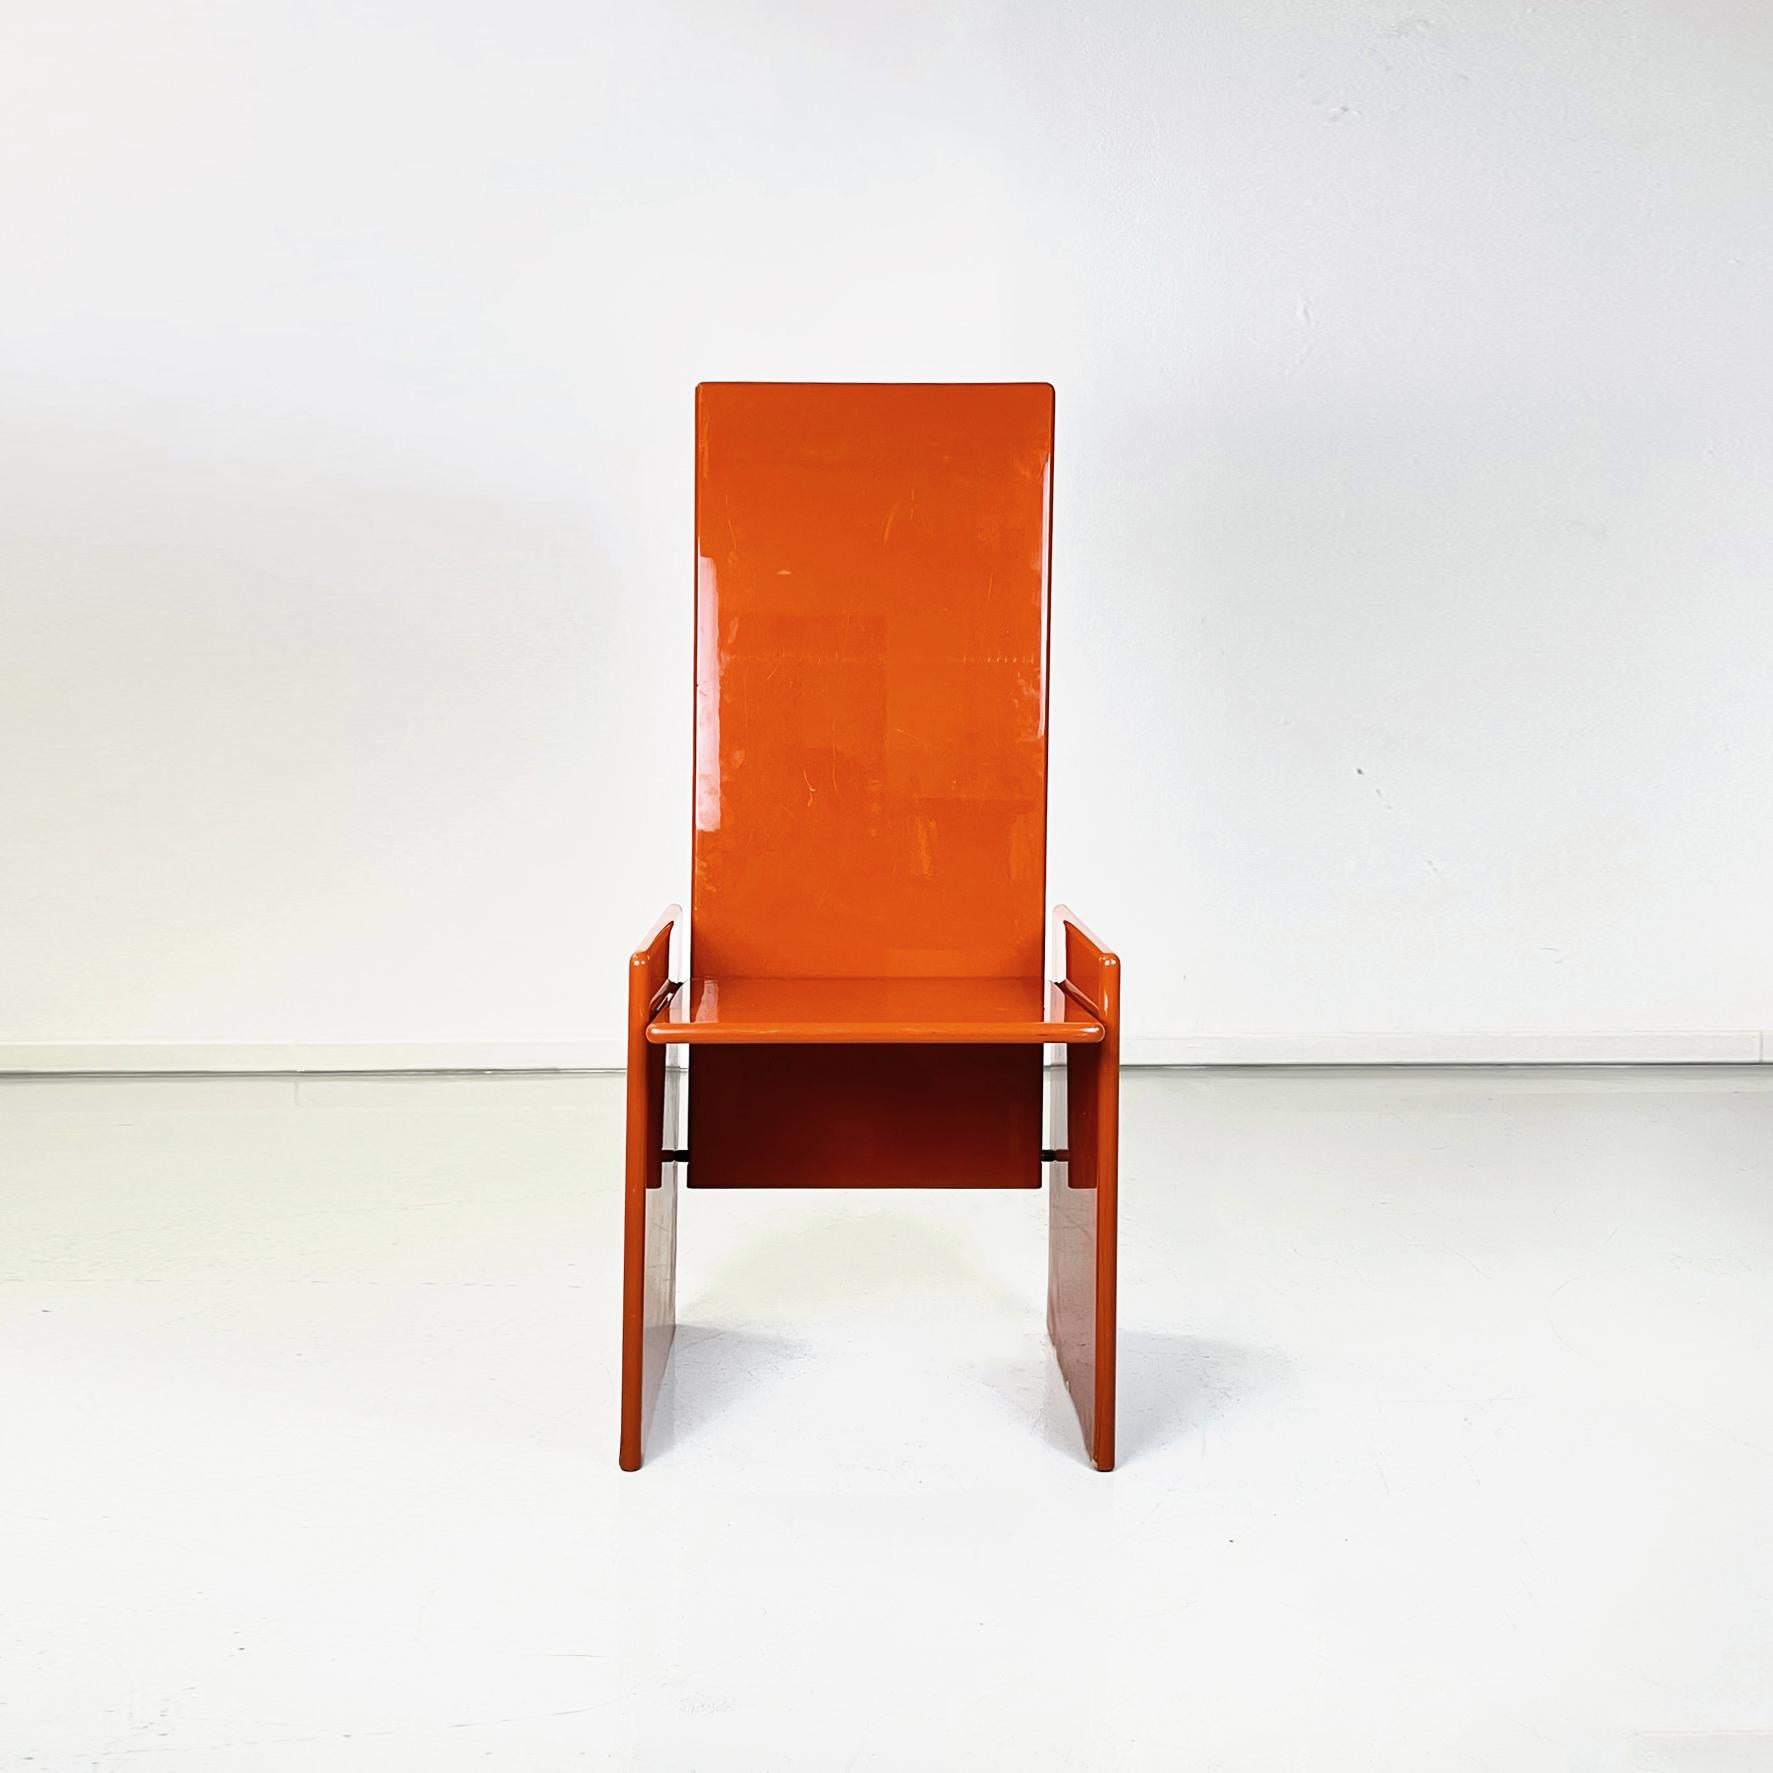 Italienischer moderner Stuhl aus rotem Holz mod. Kazuki von Kazuhide Takahama für Simone Gavina, 1960er Jahre
Sessel mod. Kazuki aus glänzend rot lackiertem Holz. Die Rückenlehne ist leicht geneigt und die Sitzfläche ist rechteckig mit abgerundeten